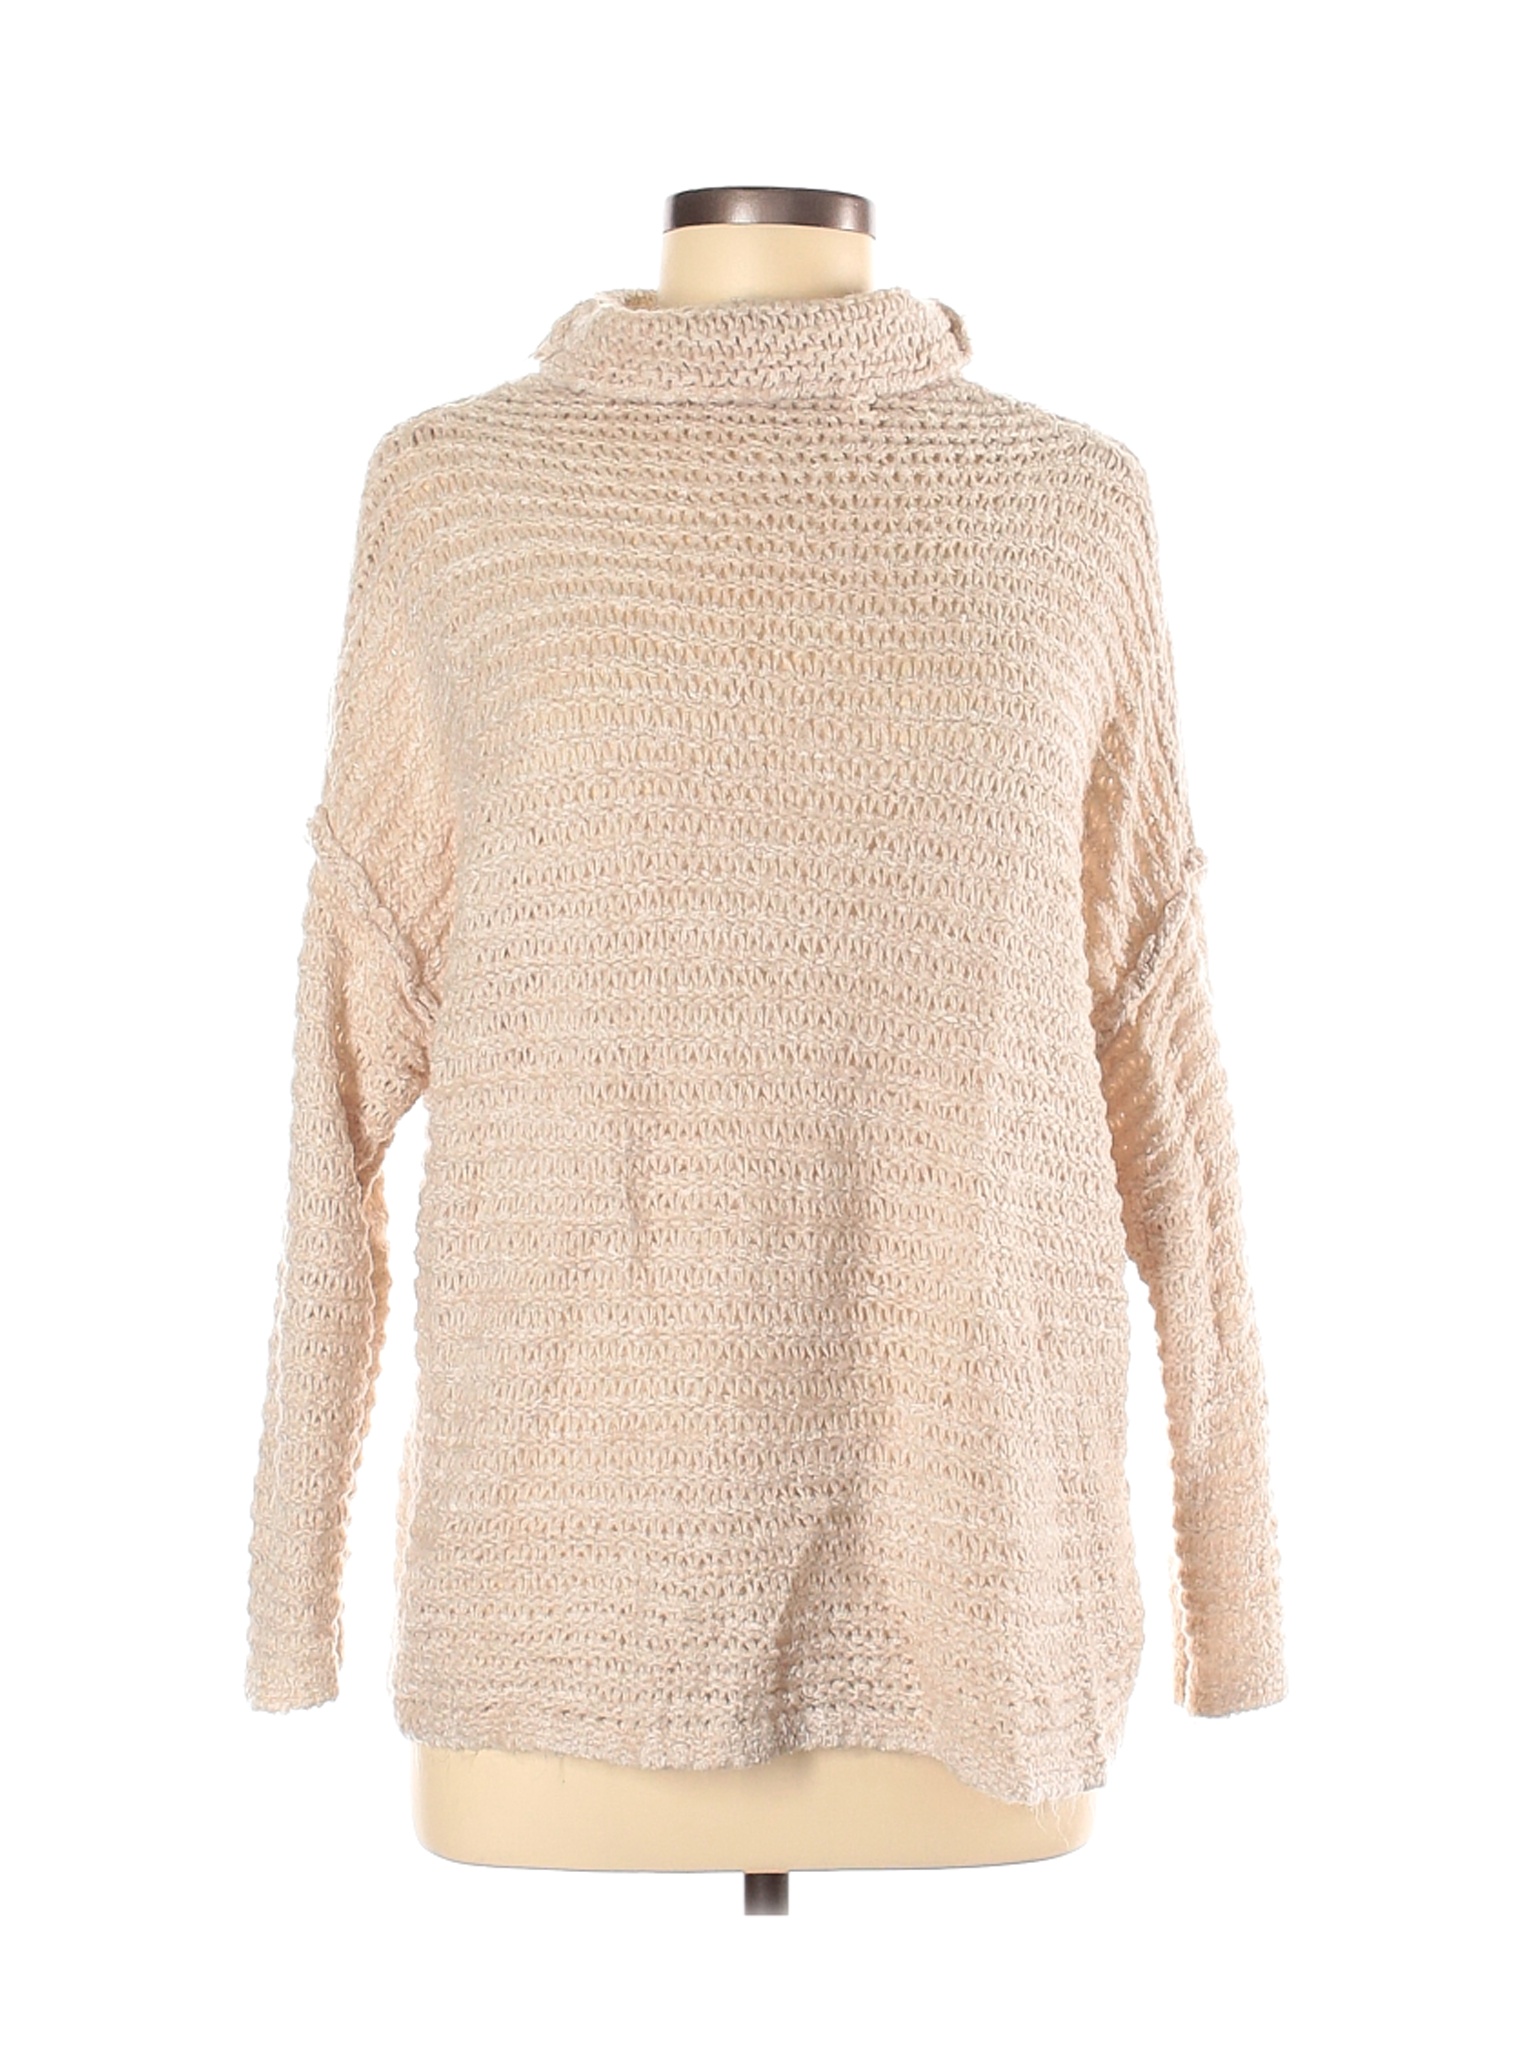 Aerie Women Brown Pullover Sweater M | eBay